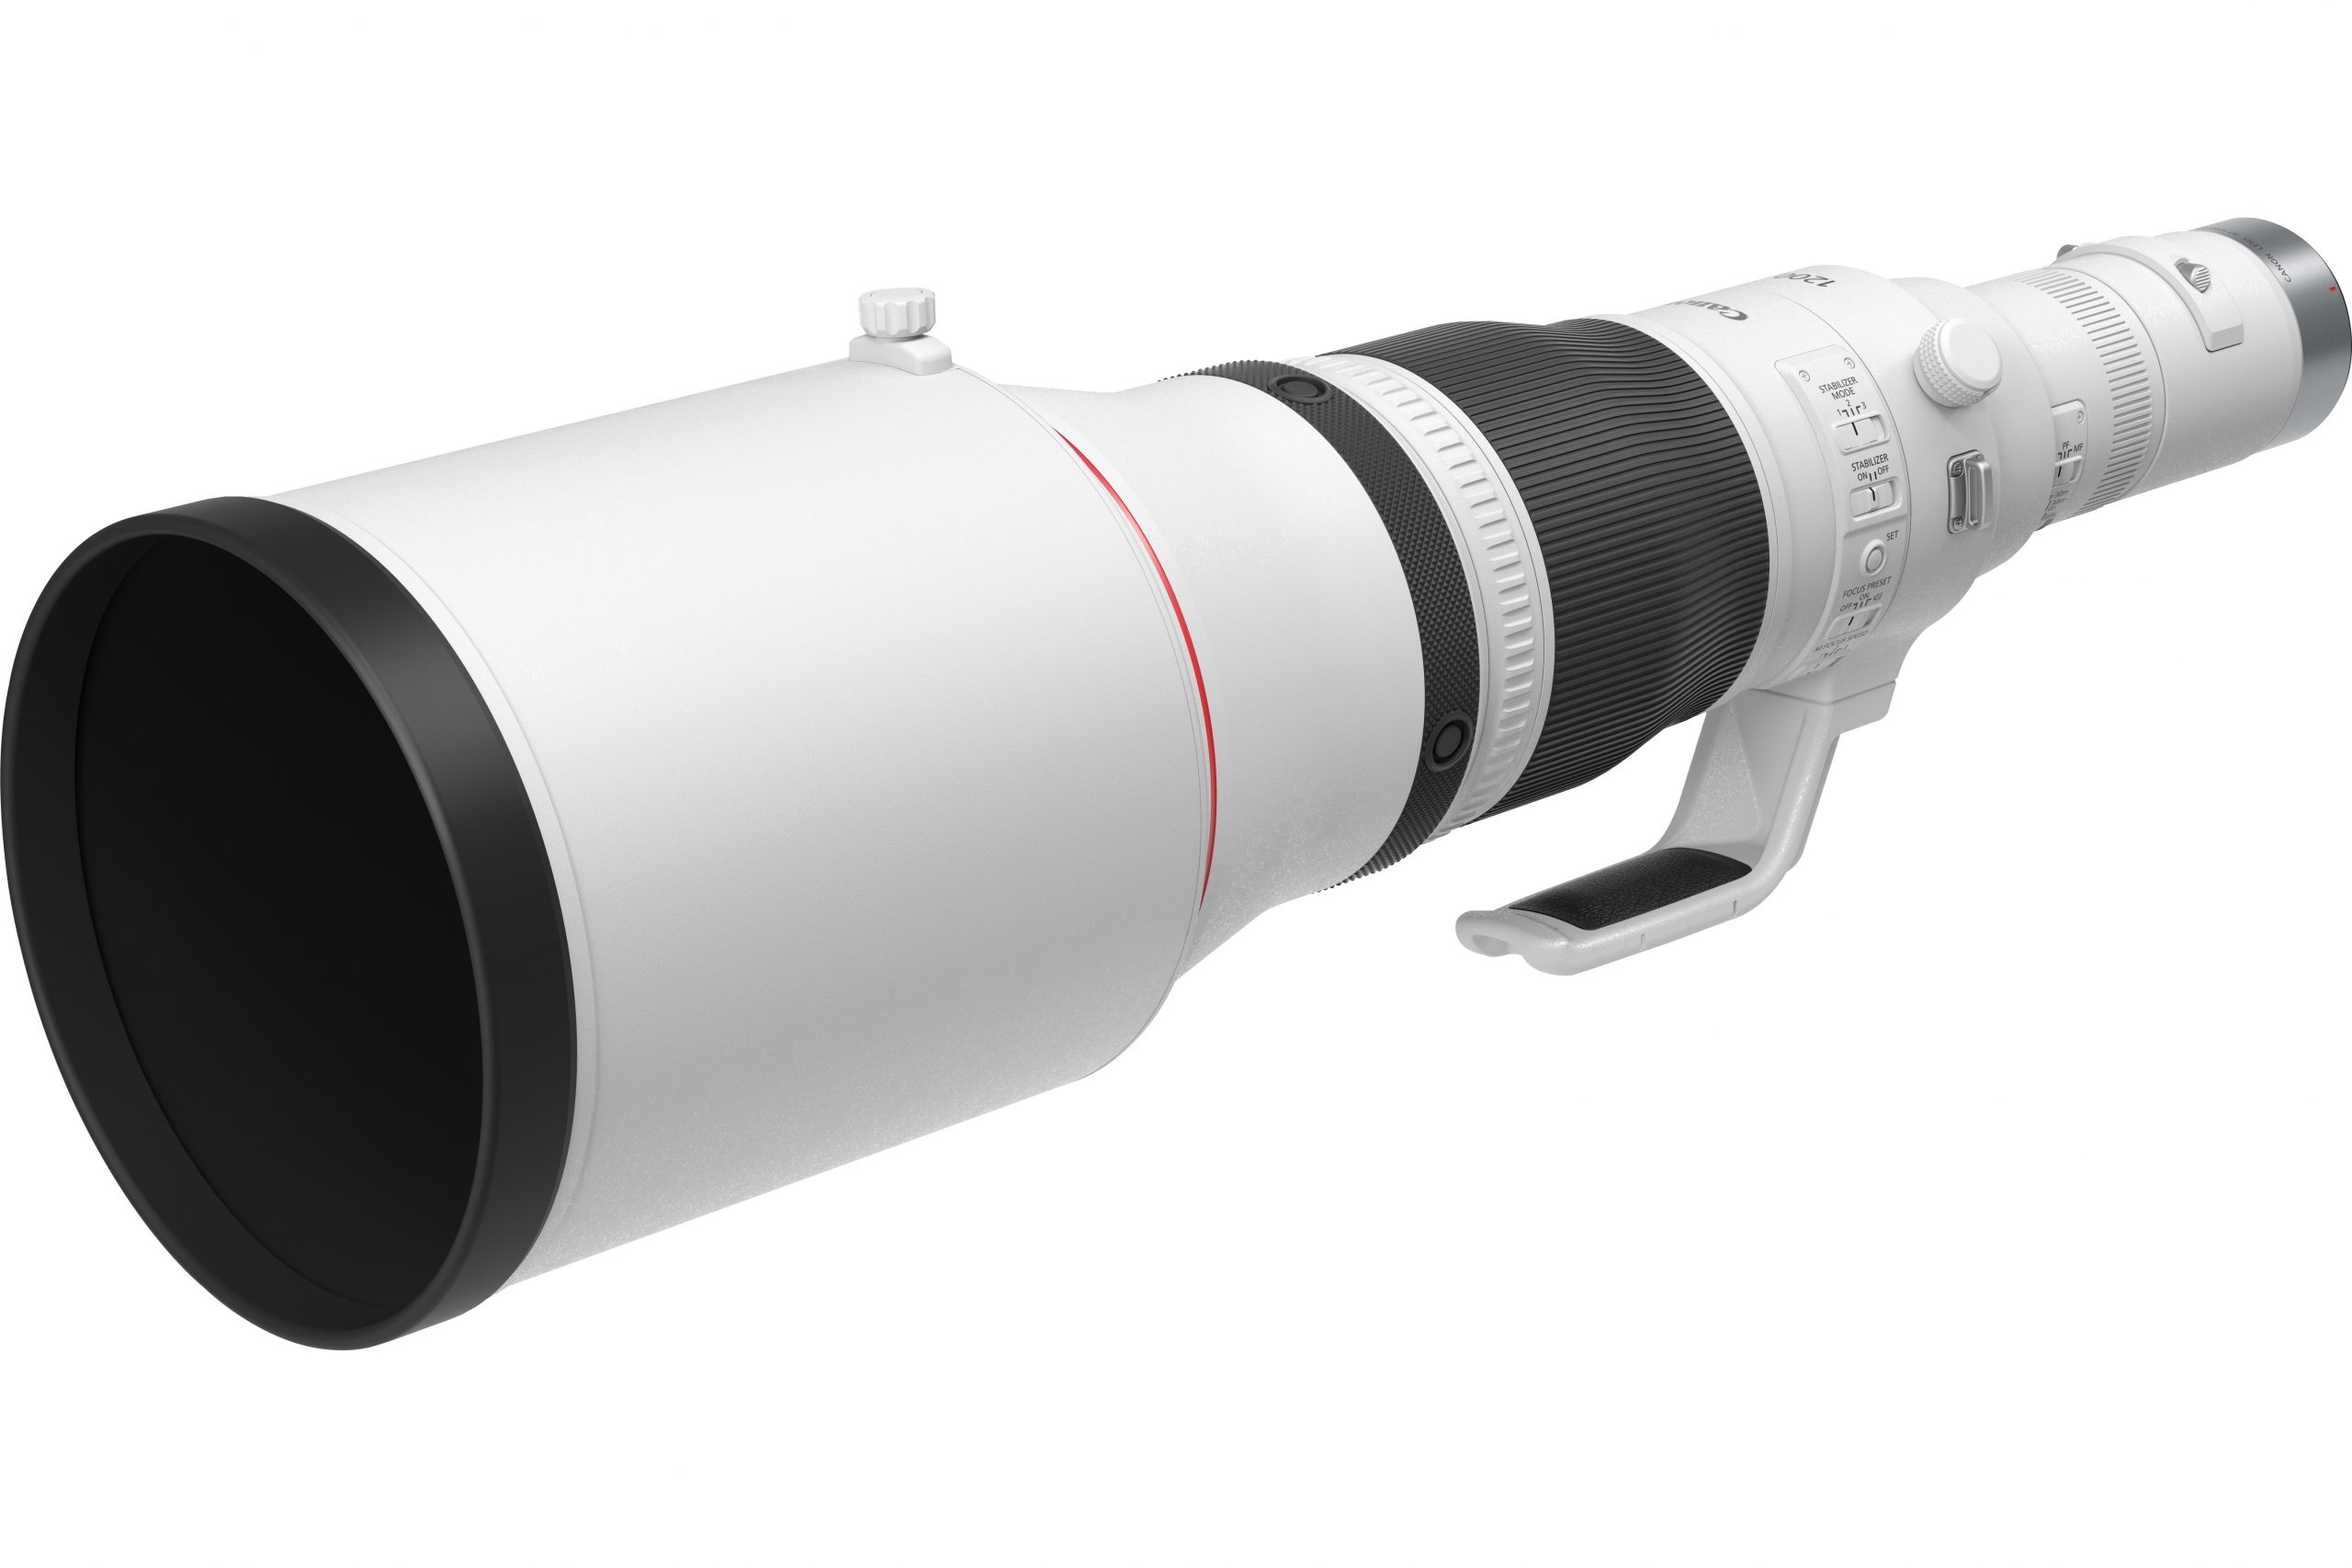 Abbildung des Objektivs Canon RF 1200mm F8 L IS USM